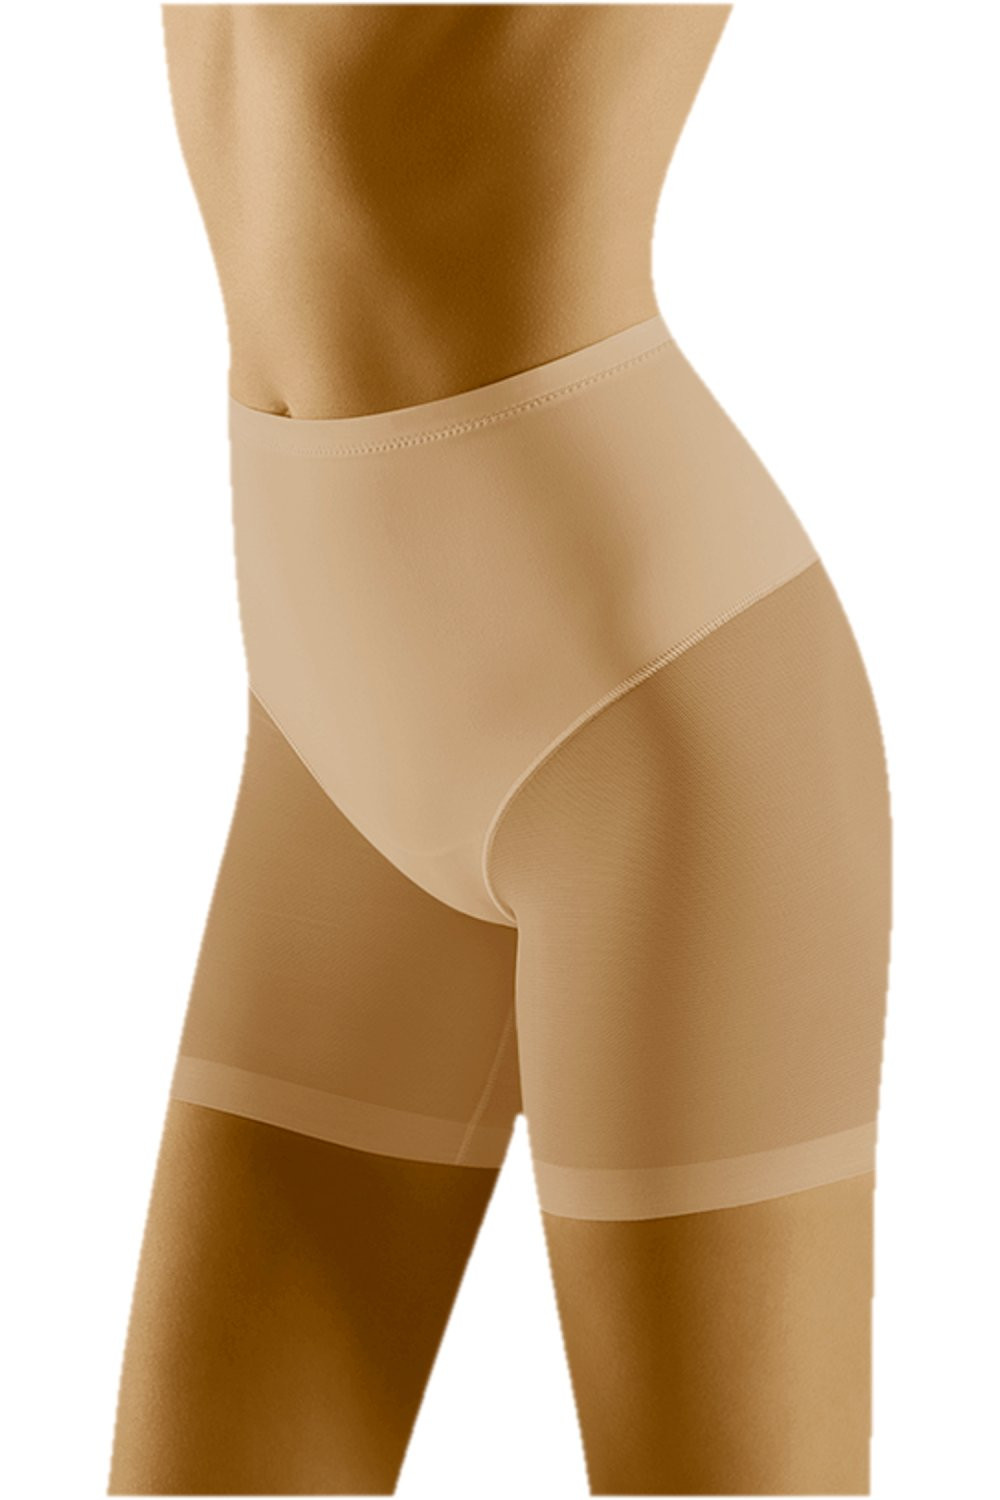 Stahovací kalhotky model 17180326 beige WOLBAR Béžová M - Wol-Bar